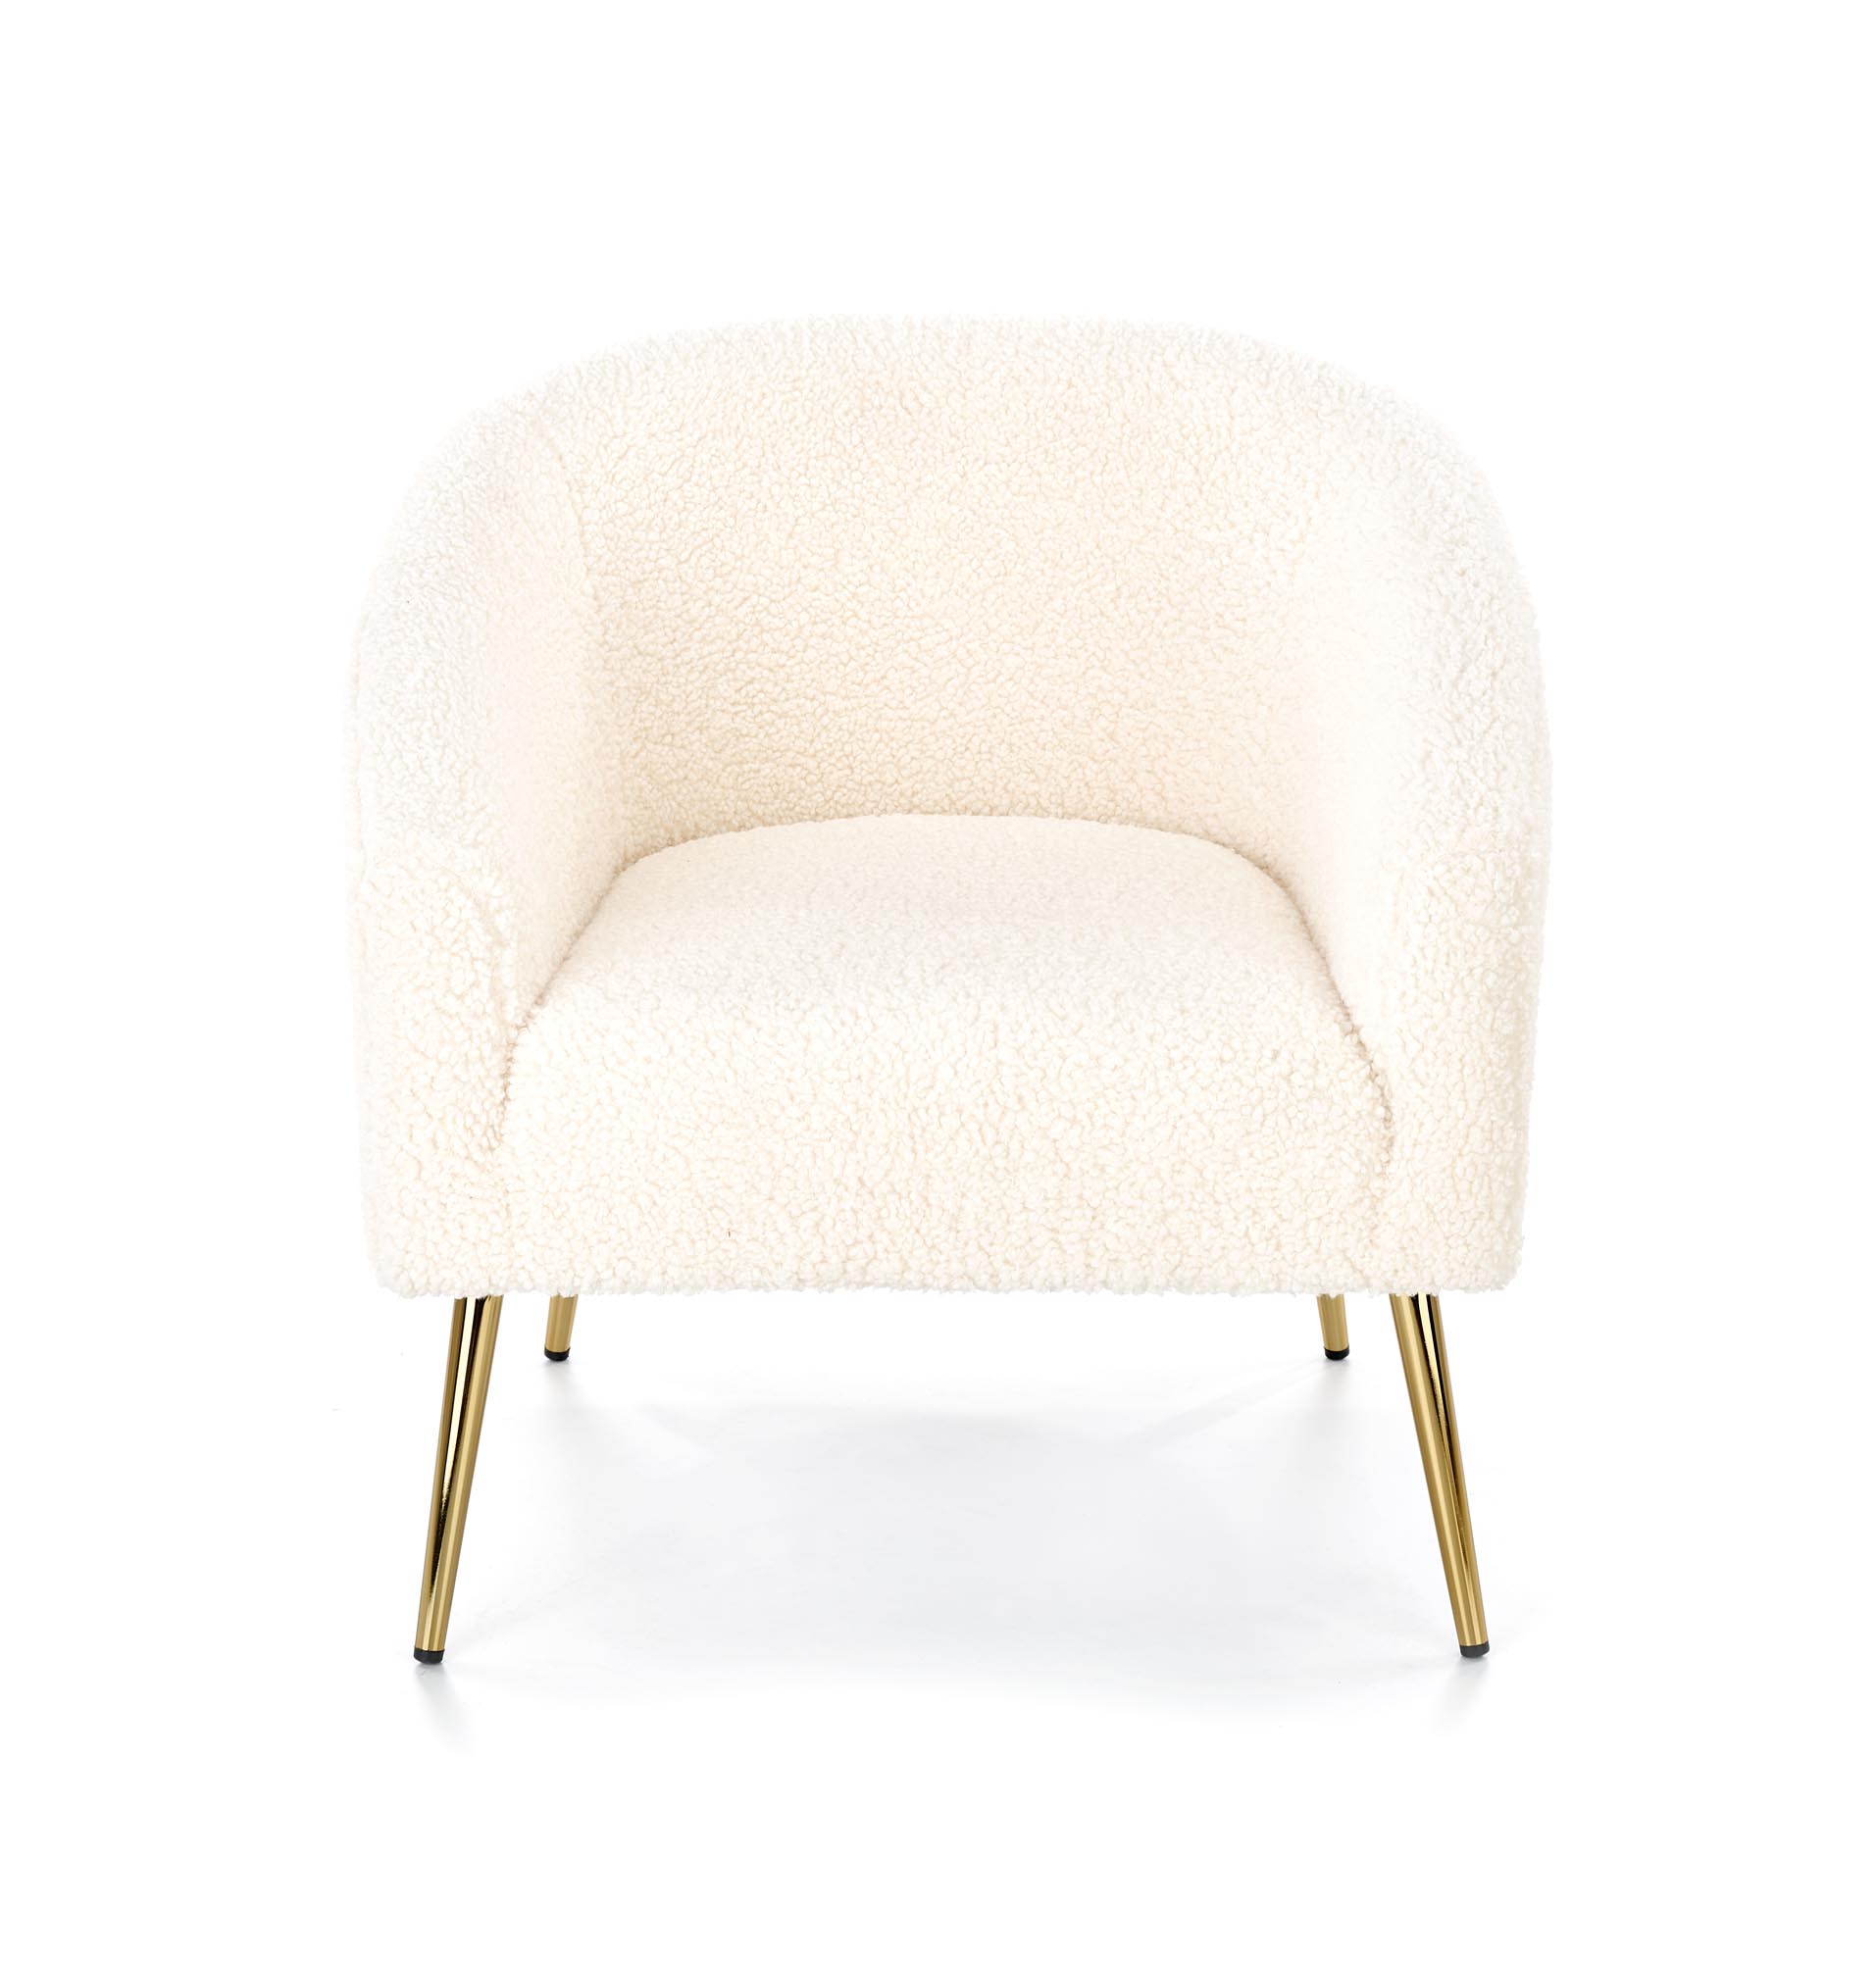 GRIFON fotel wypoczynkowy kremowy / złoty grifon fotel wypoczynkowy kremowy / złoty